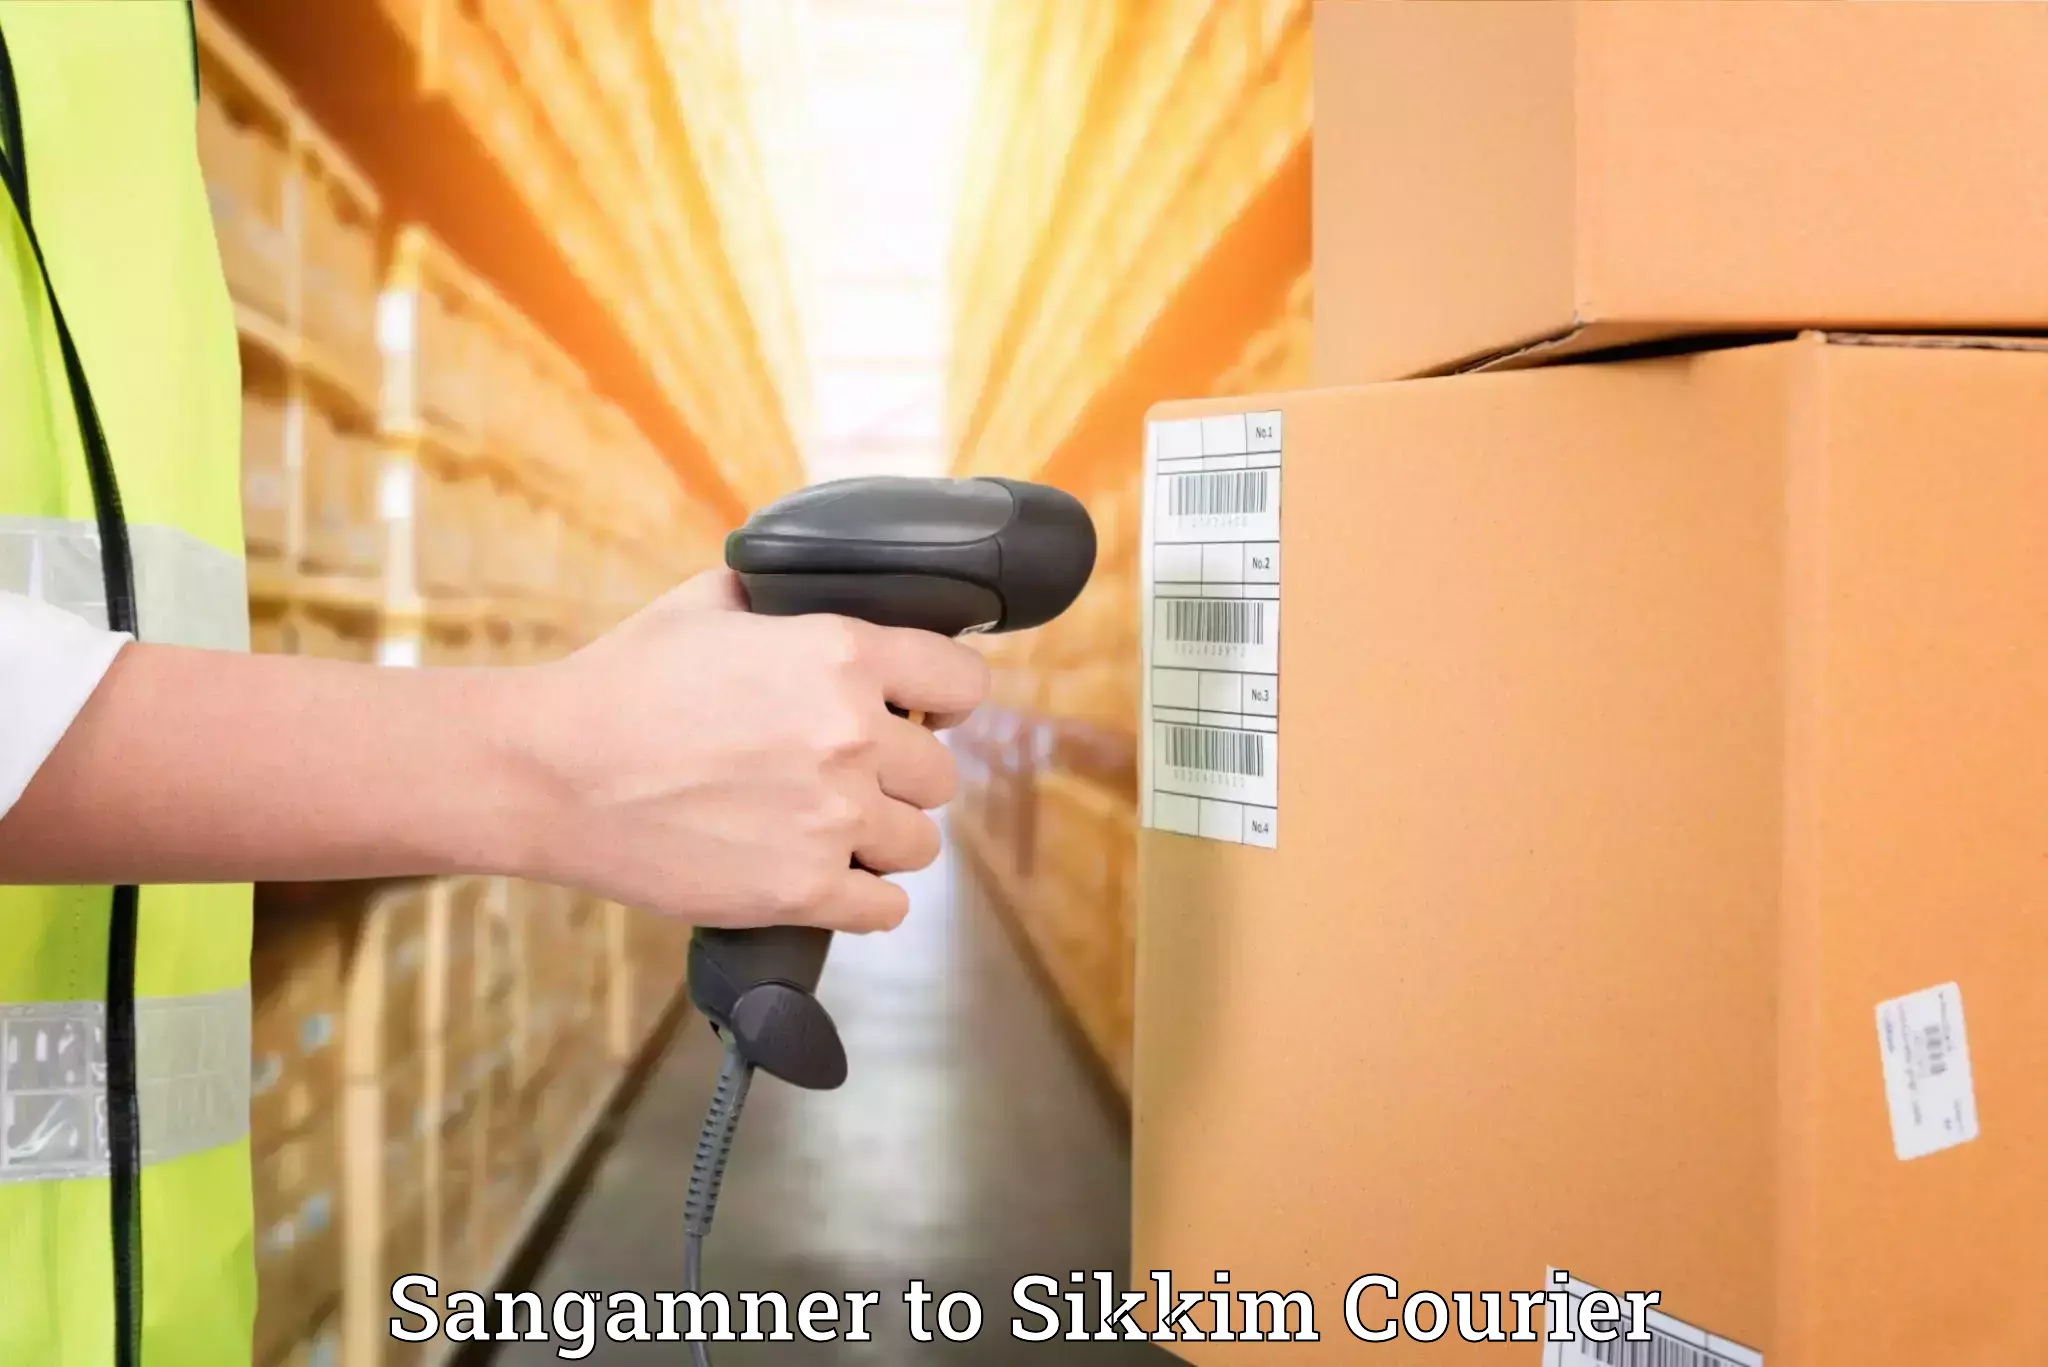 Furniture delivery service Sangamner to Singtam